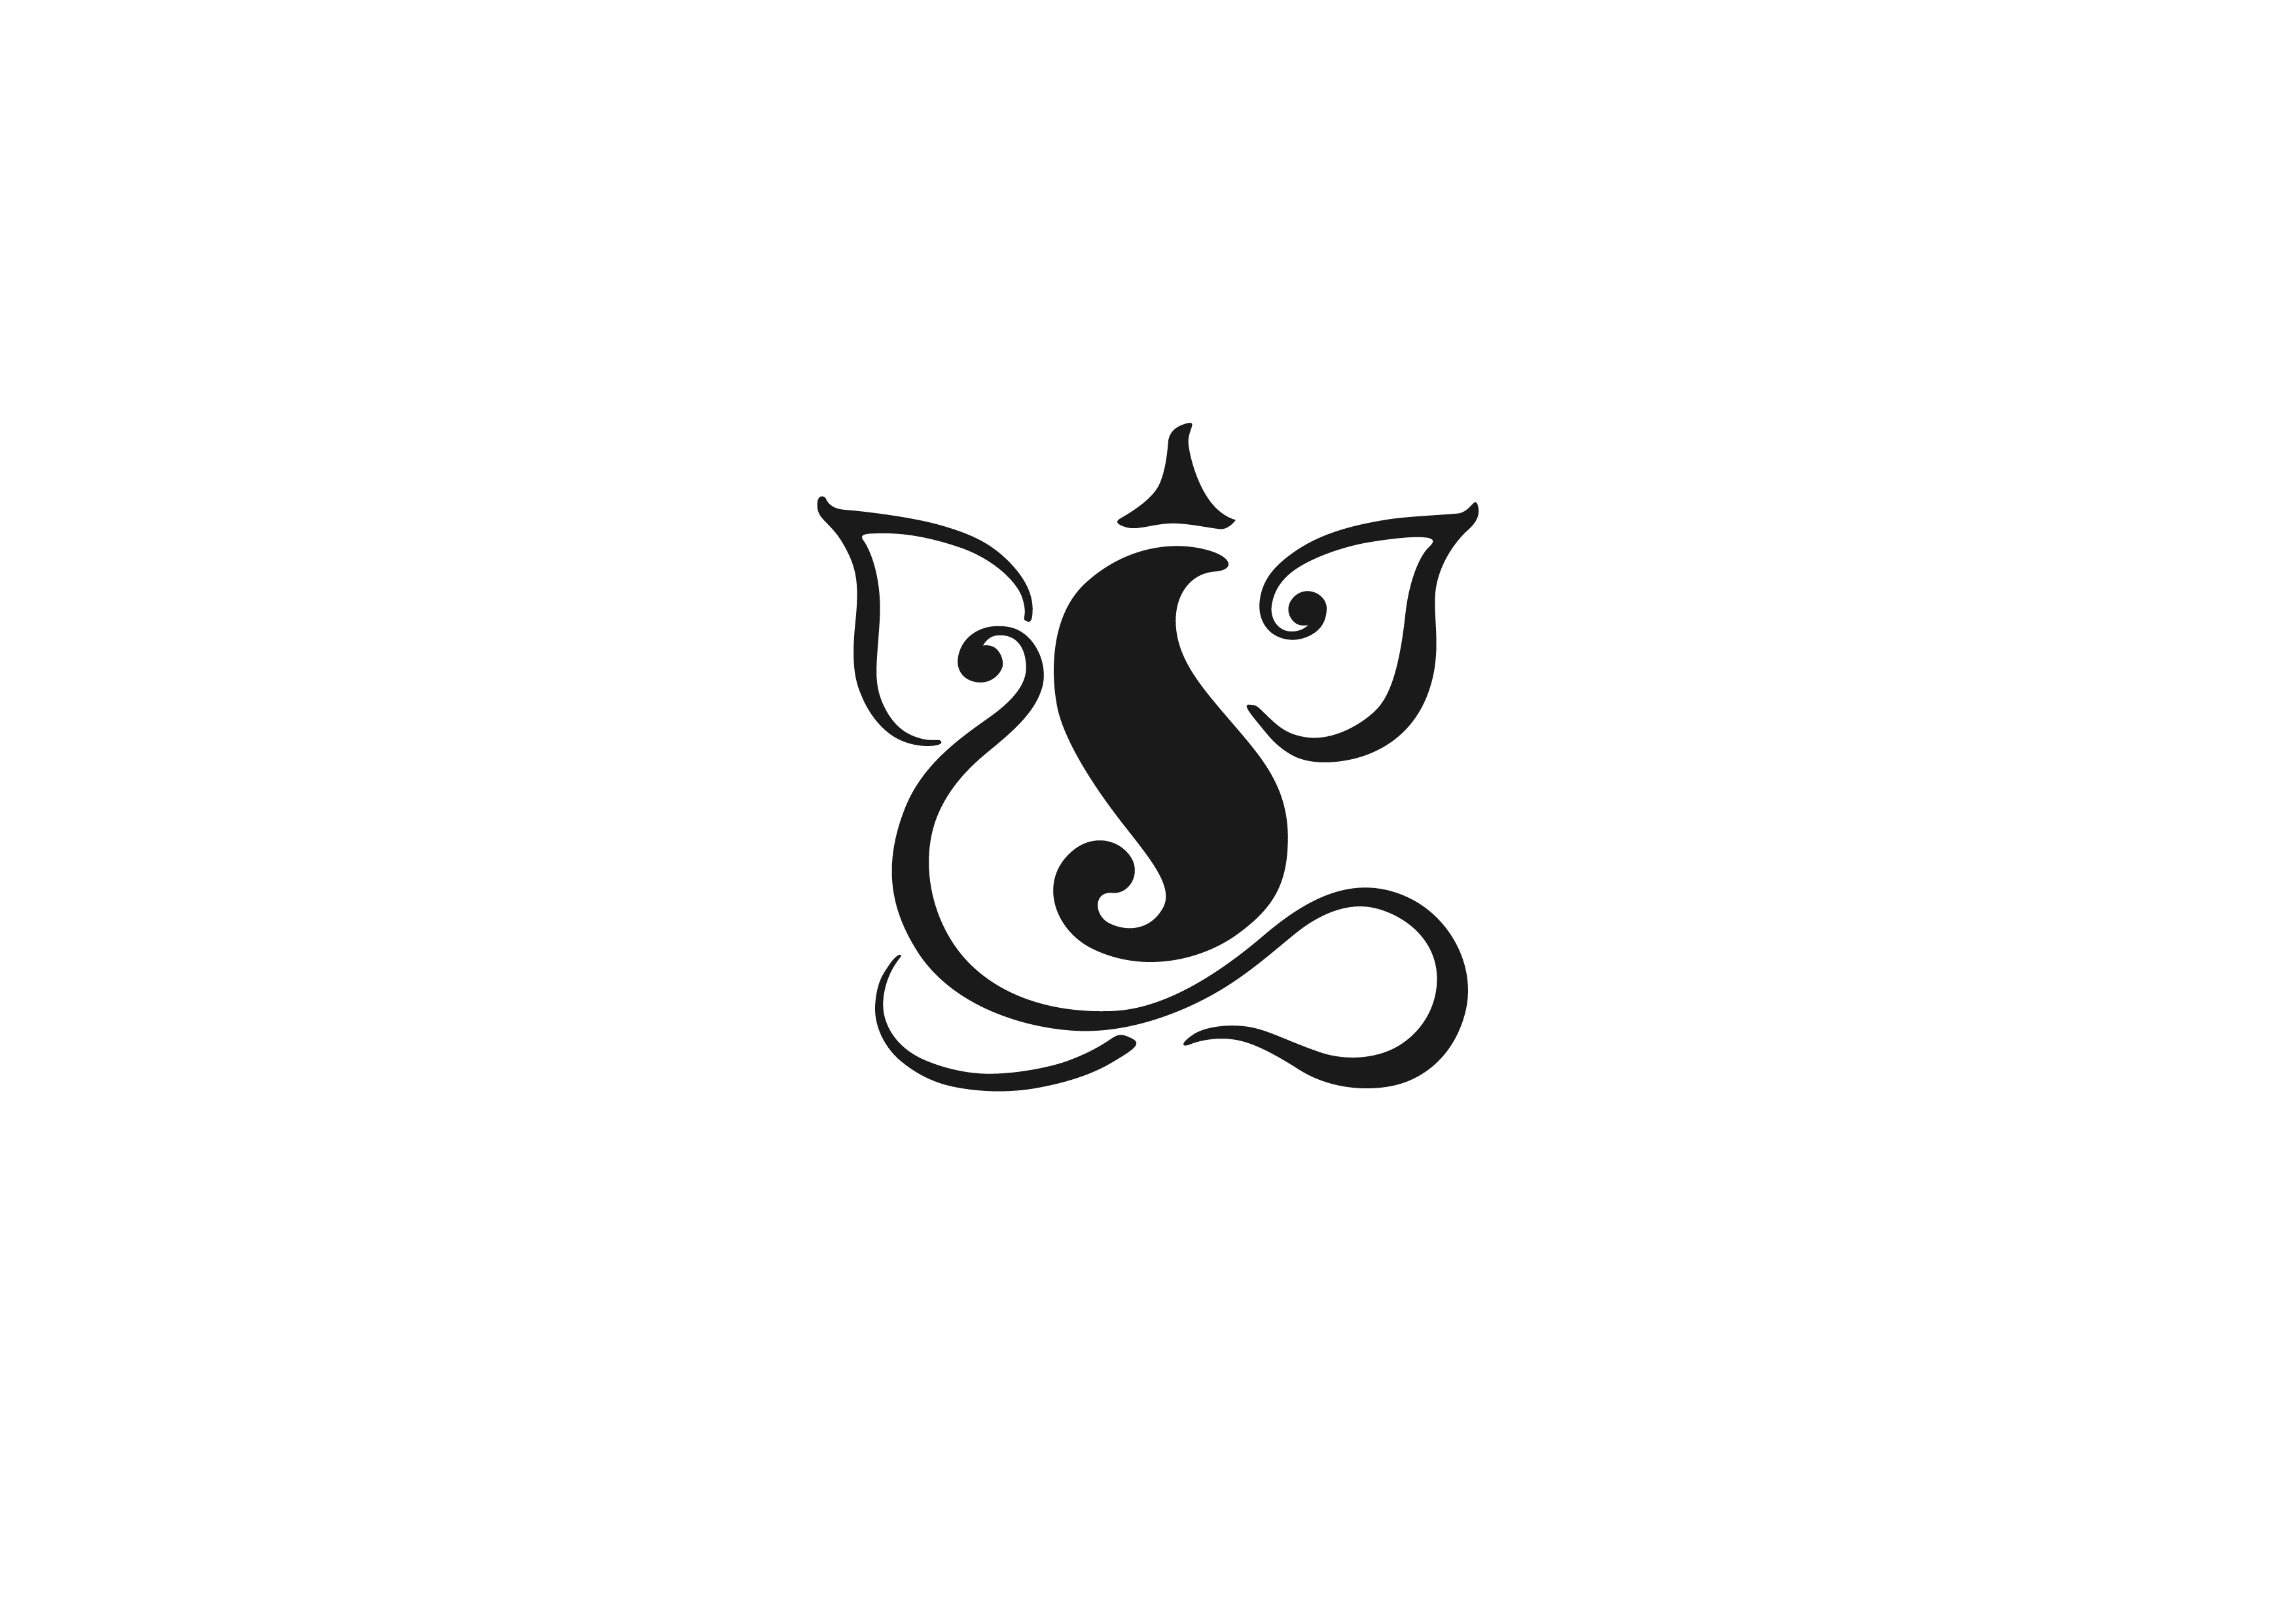 Ganesh Logo